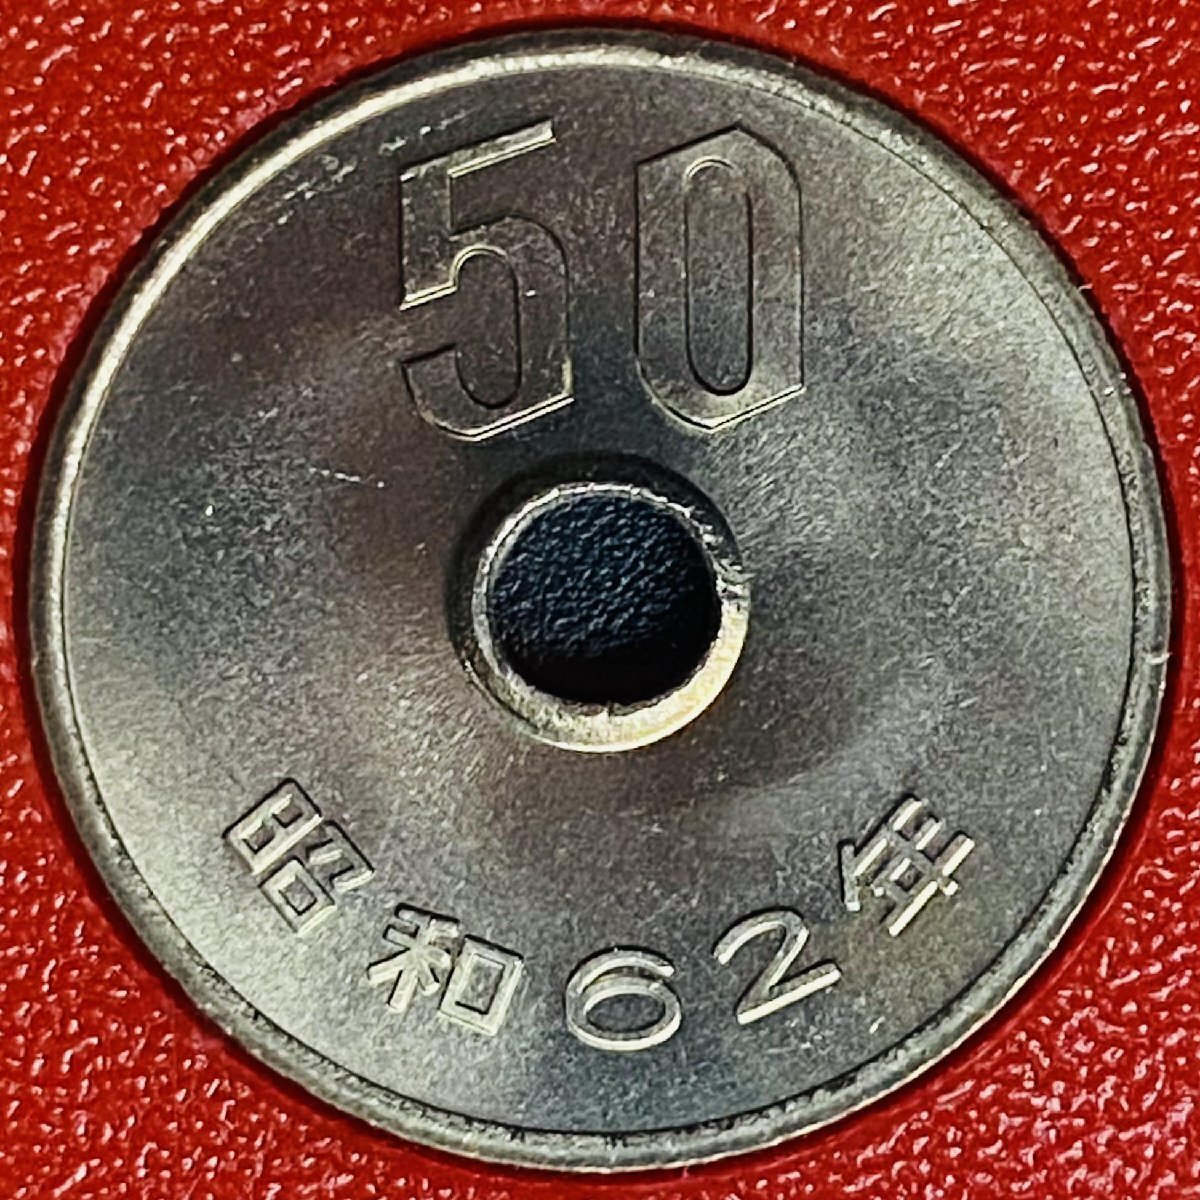 1円~ 1987年 昭和62年 通常 ミントセット 貨幣セット 額面6660円 記念硬貨 記念貨幣 貨幣組合 コイン coin M1987_10